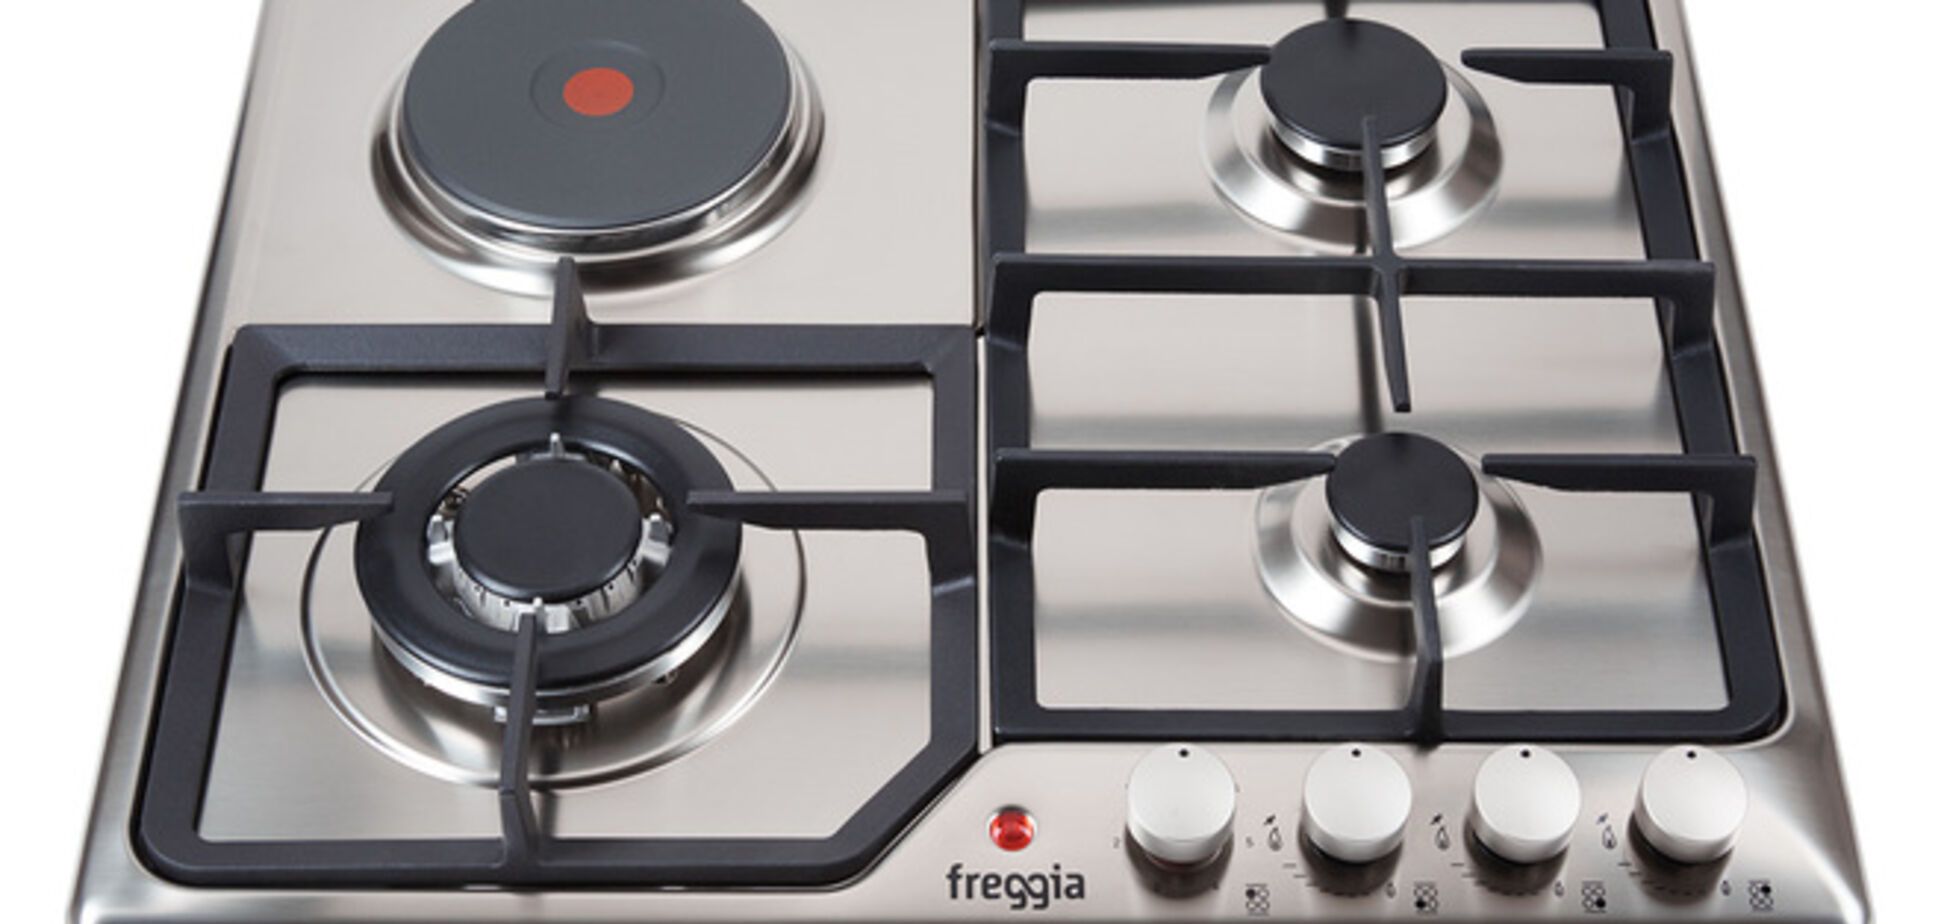 Компания Freggia выпустила новую линию комбинированных варочных поверхностей 3+1 